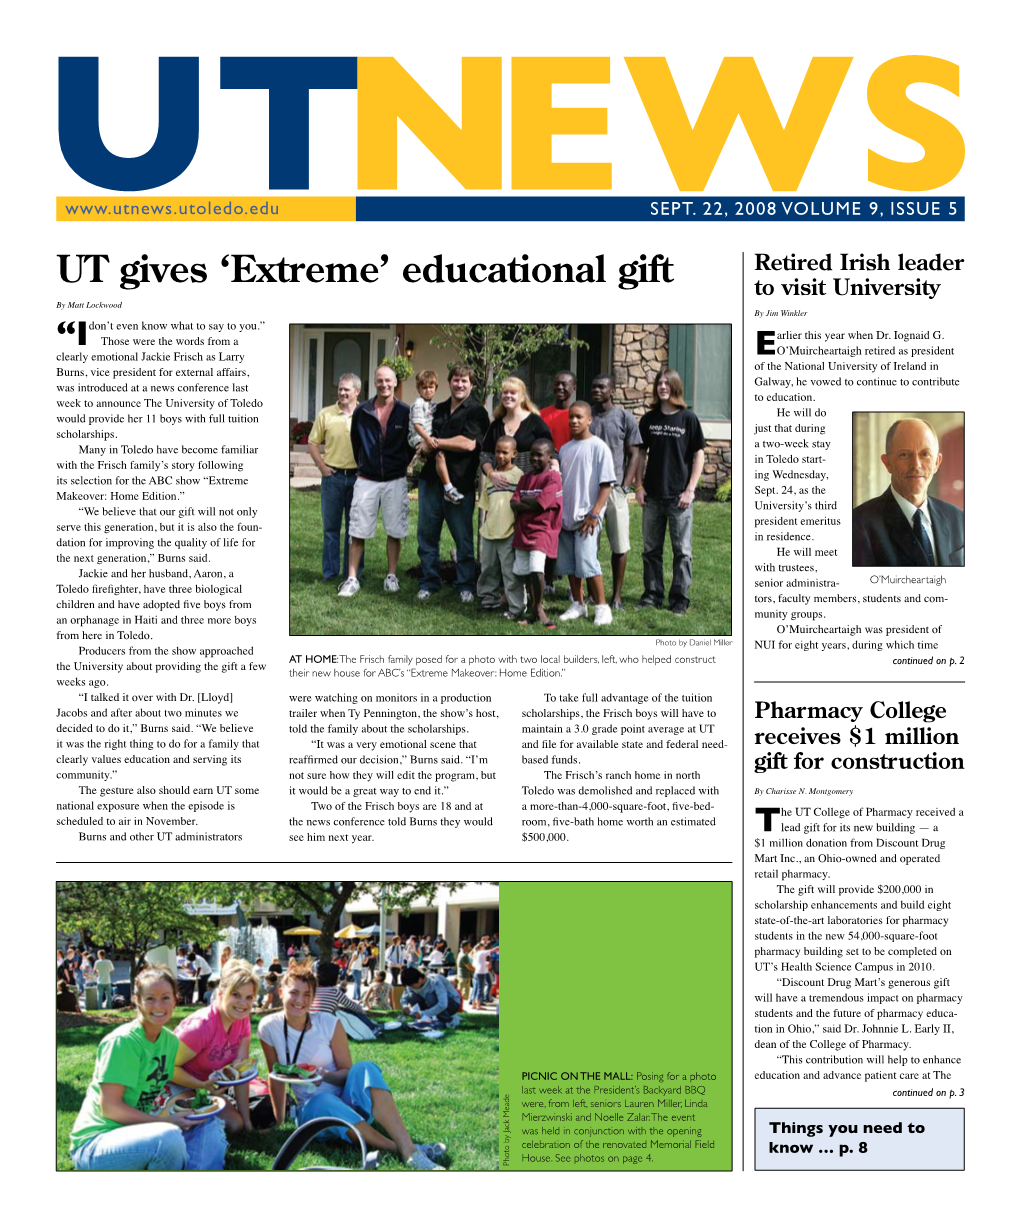 UT Gives 'Extreme' Educational Gift